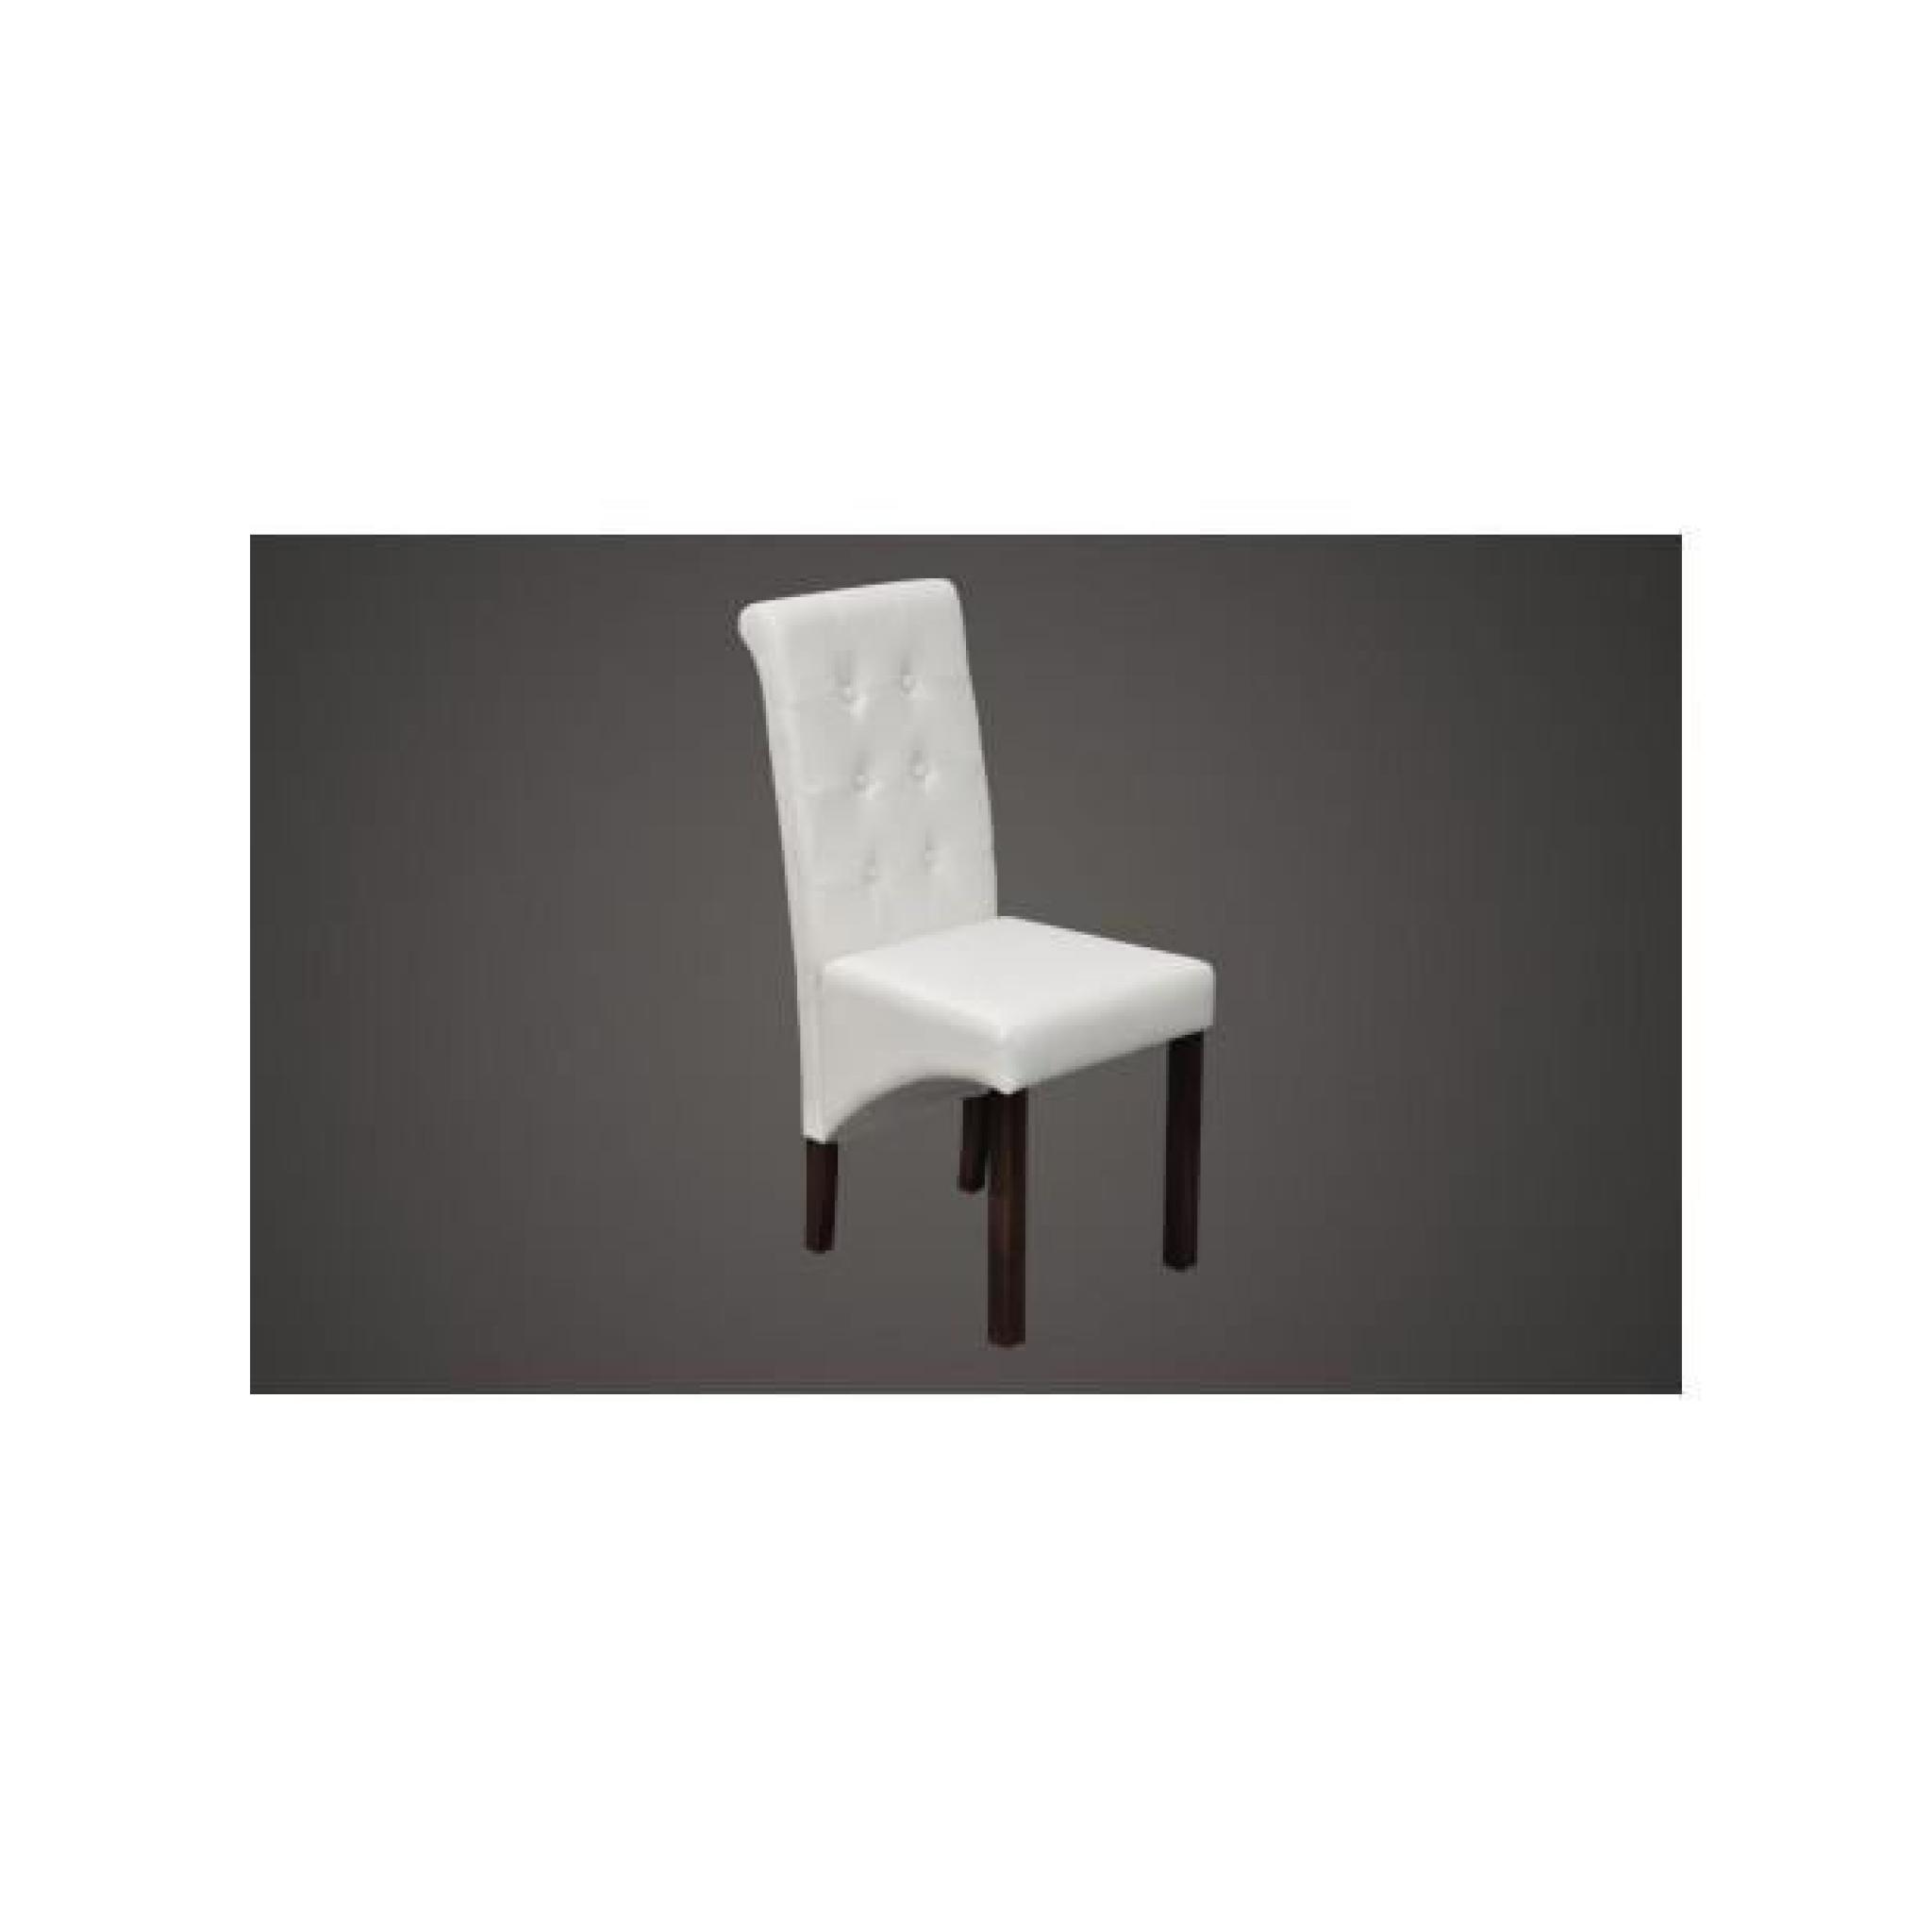 Superbe Chaise antique PU cuir blanc (lot de 4)   pas cher